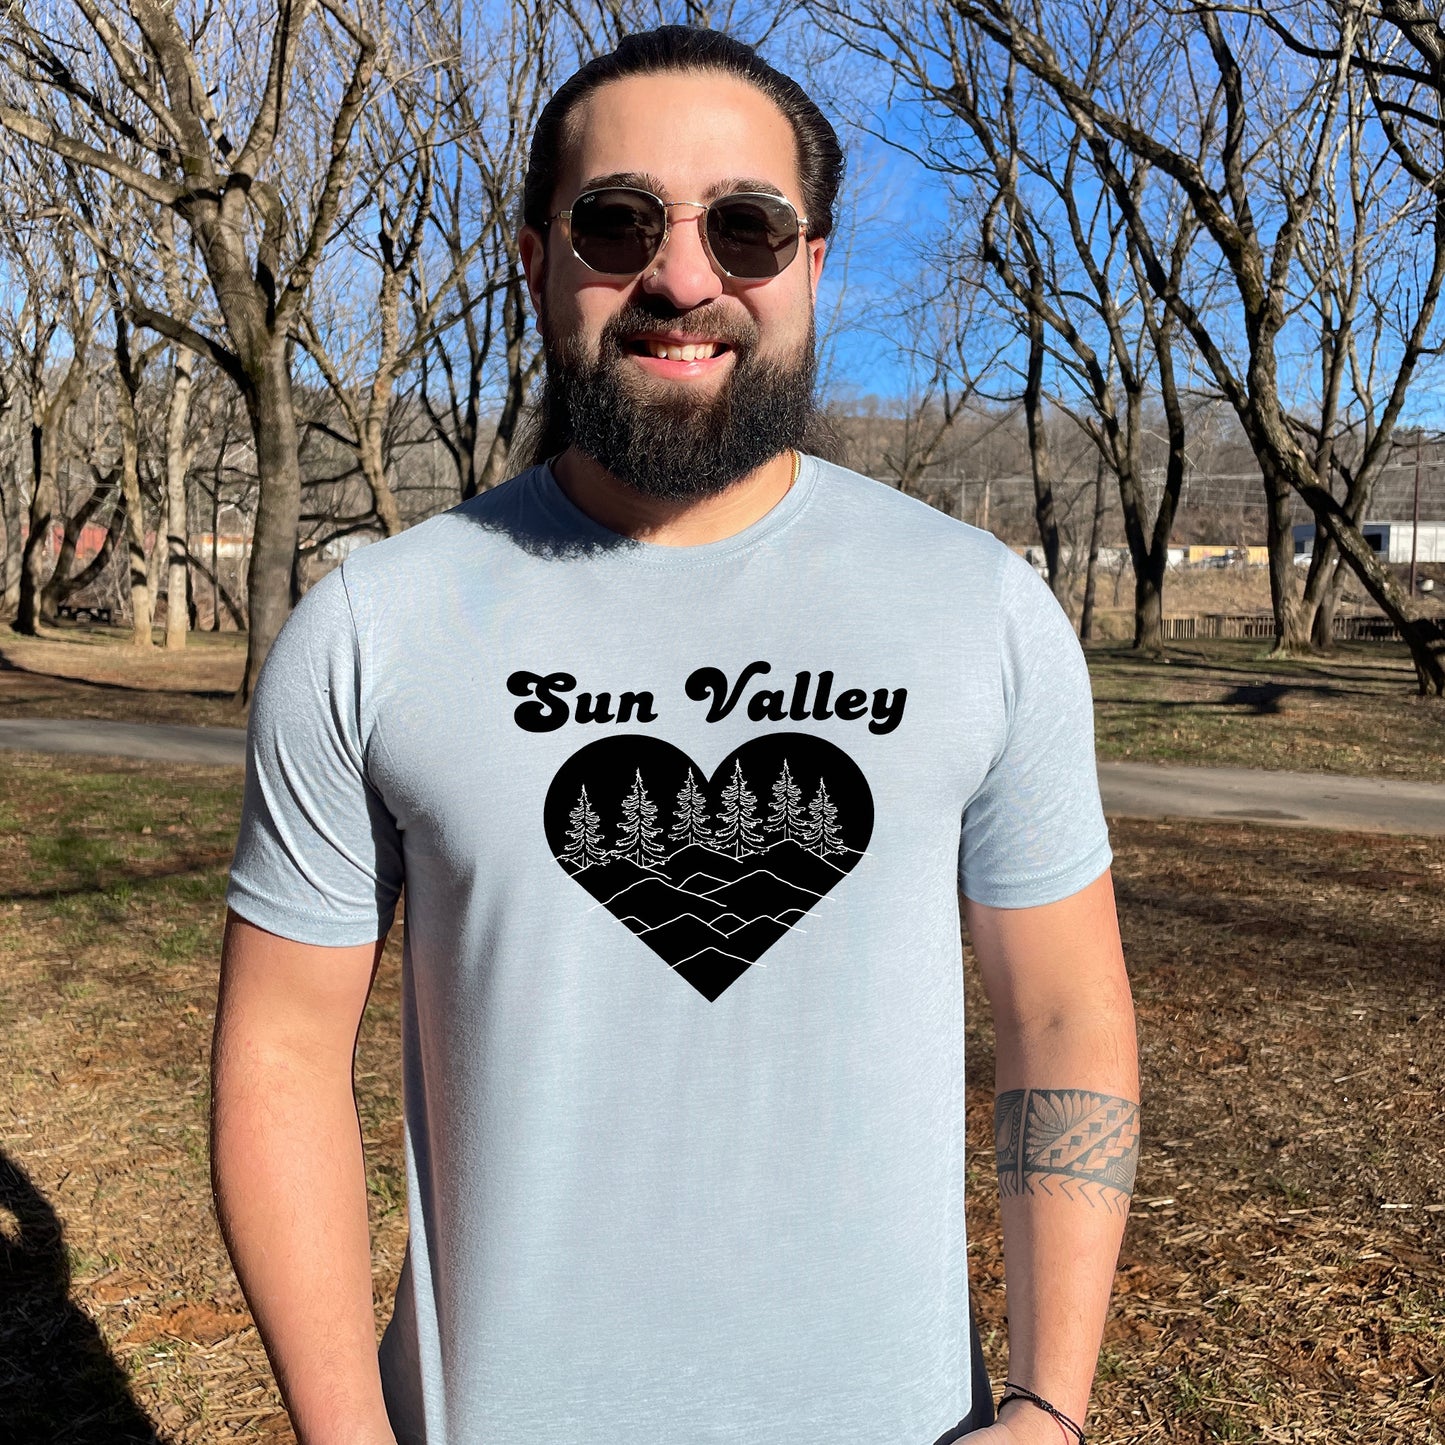 a man with a beard wearing a sun valley t - shirt